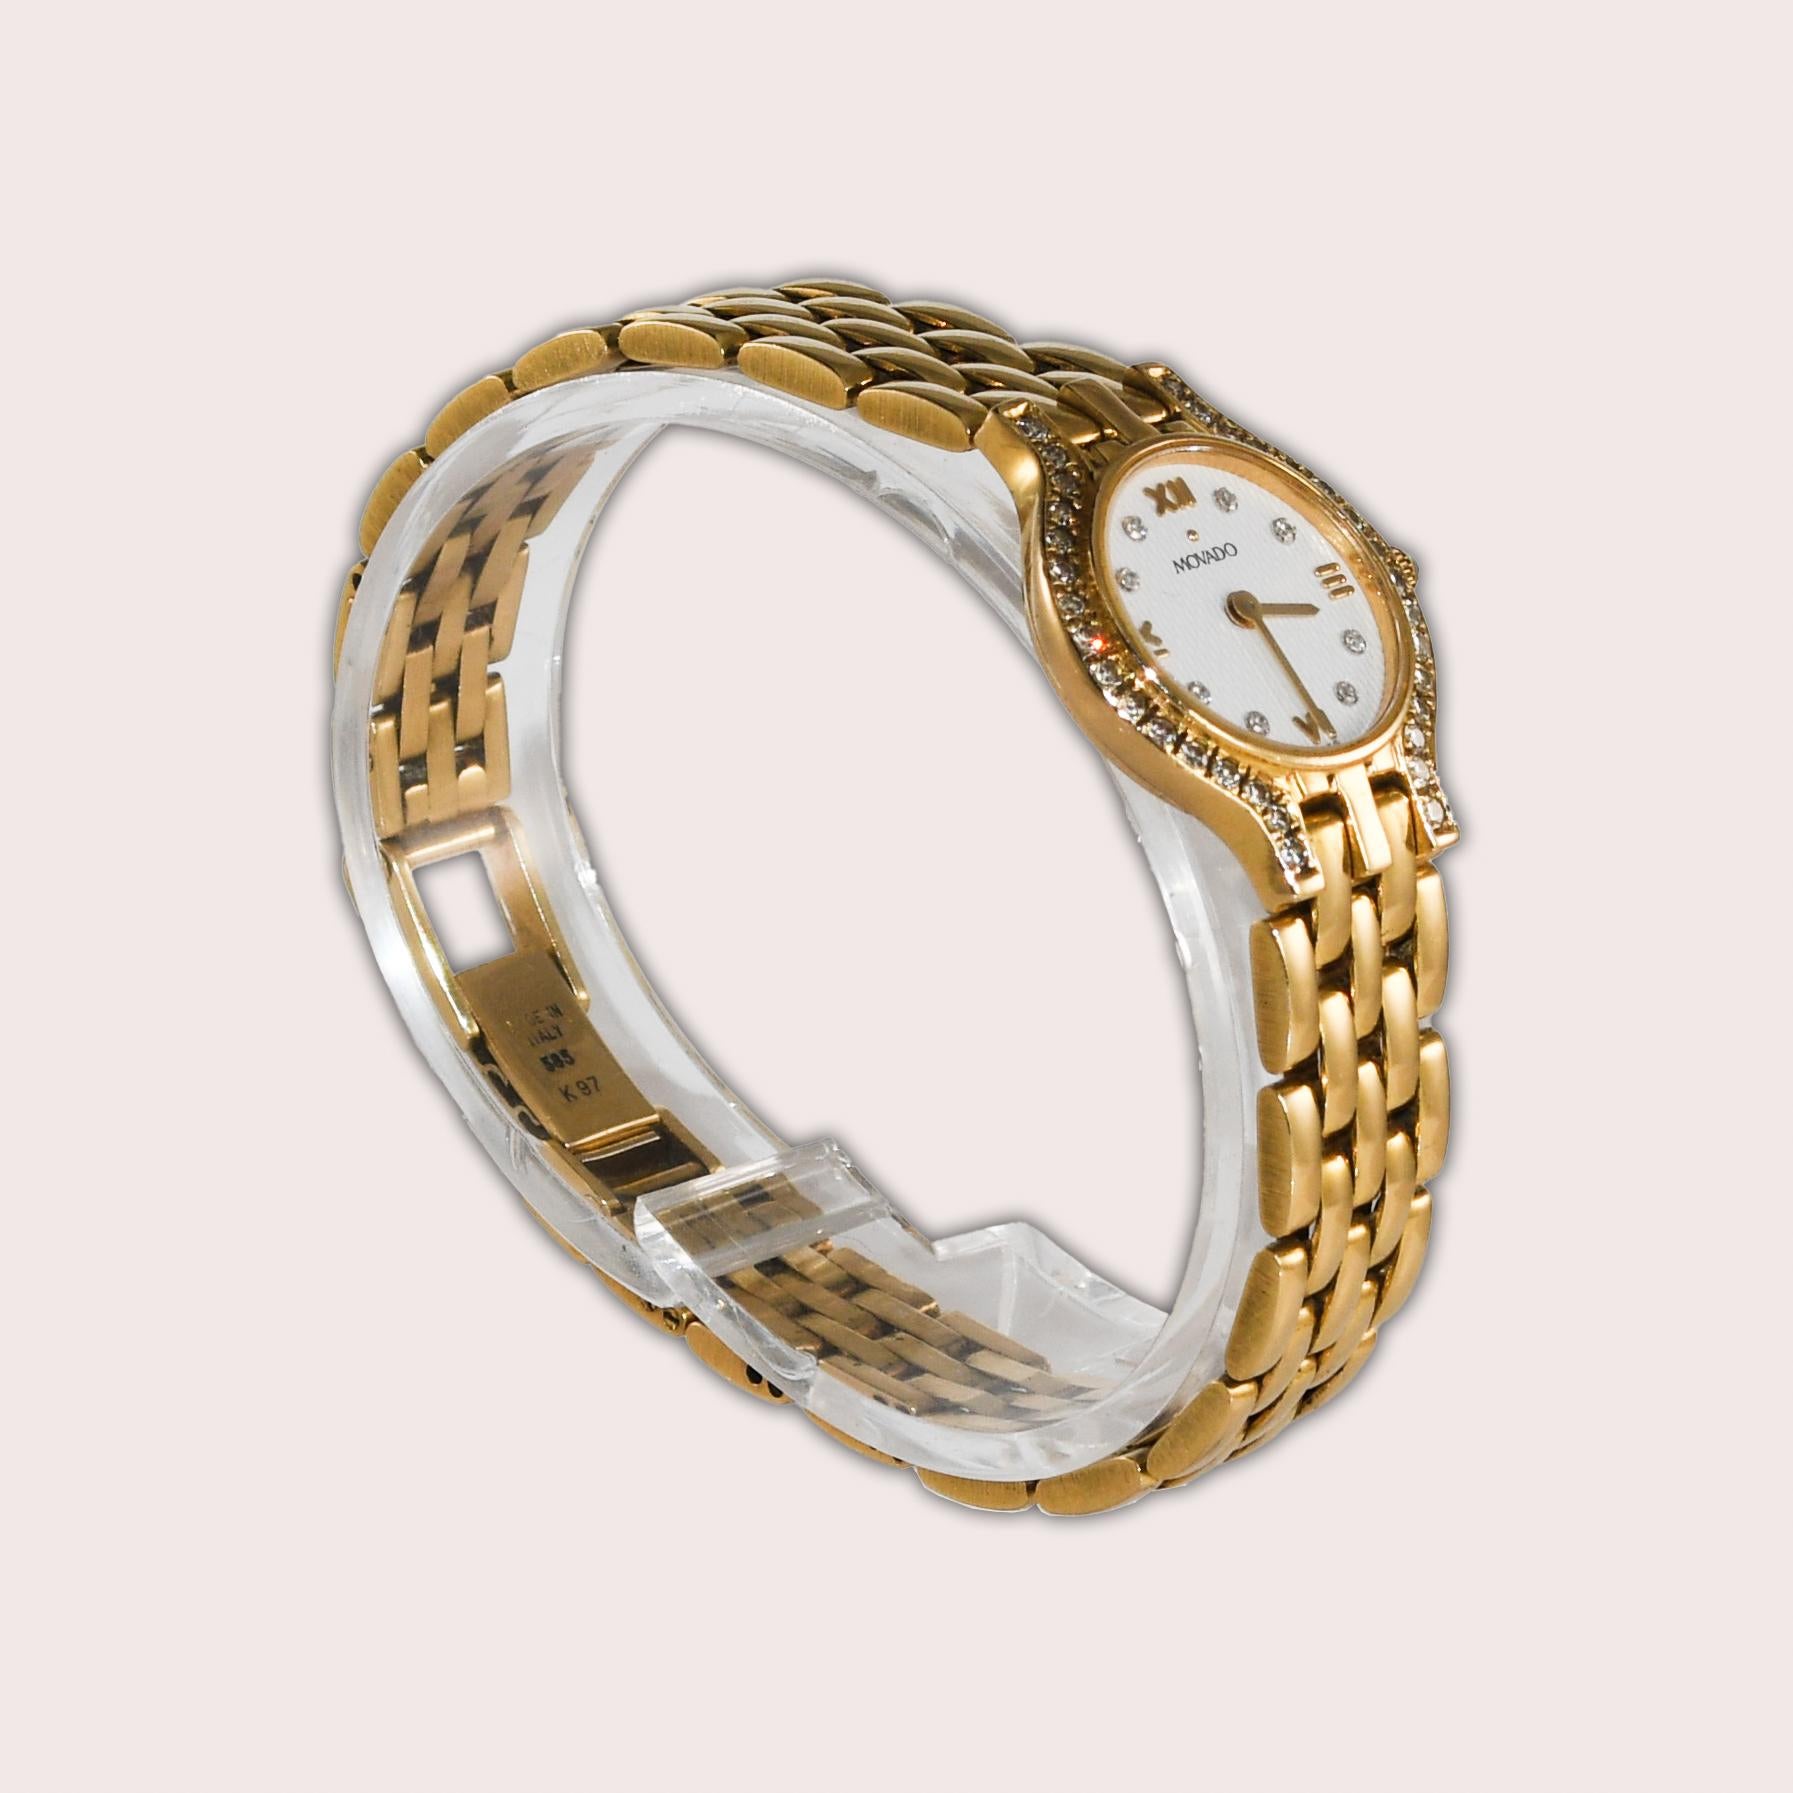 Ladies 14k Gelbgold Movado Uhr mit Diamant Lünette und Zifferblatt.
Stamped 14k und die Rückseite Fall. 
Die Gehäusegröße ist 20 mm breit. 
Das Bruttogewicht beträgt 33 Gramm.
Das Quarzwerk hat eine neue Batterie und hält die Zeit gut.
Diamanten im